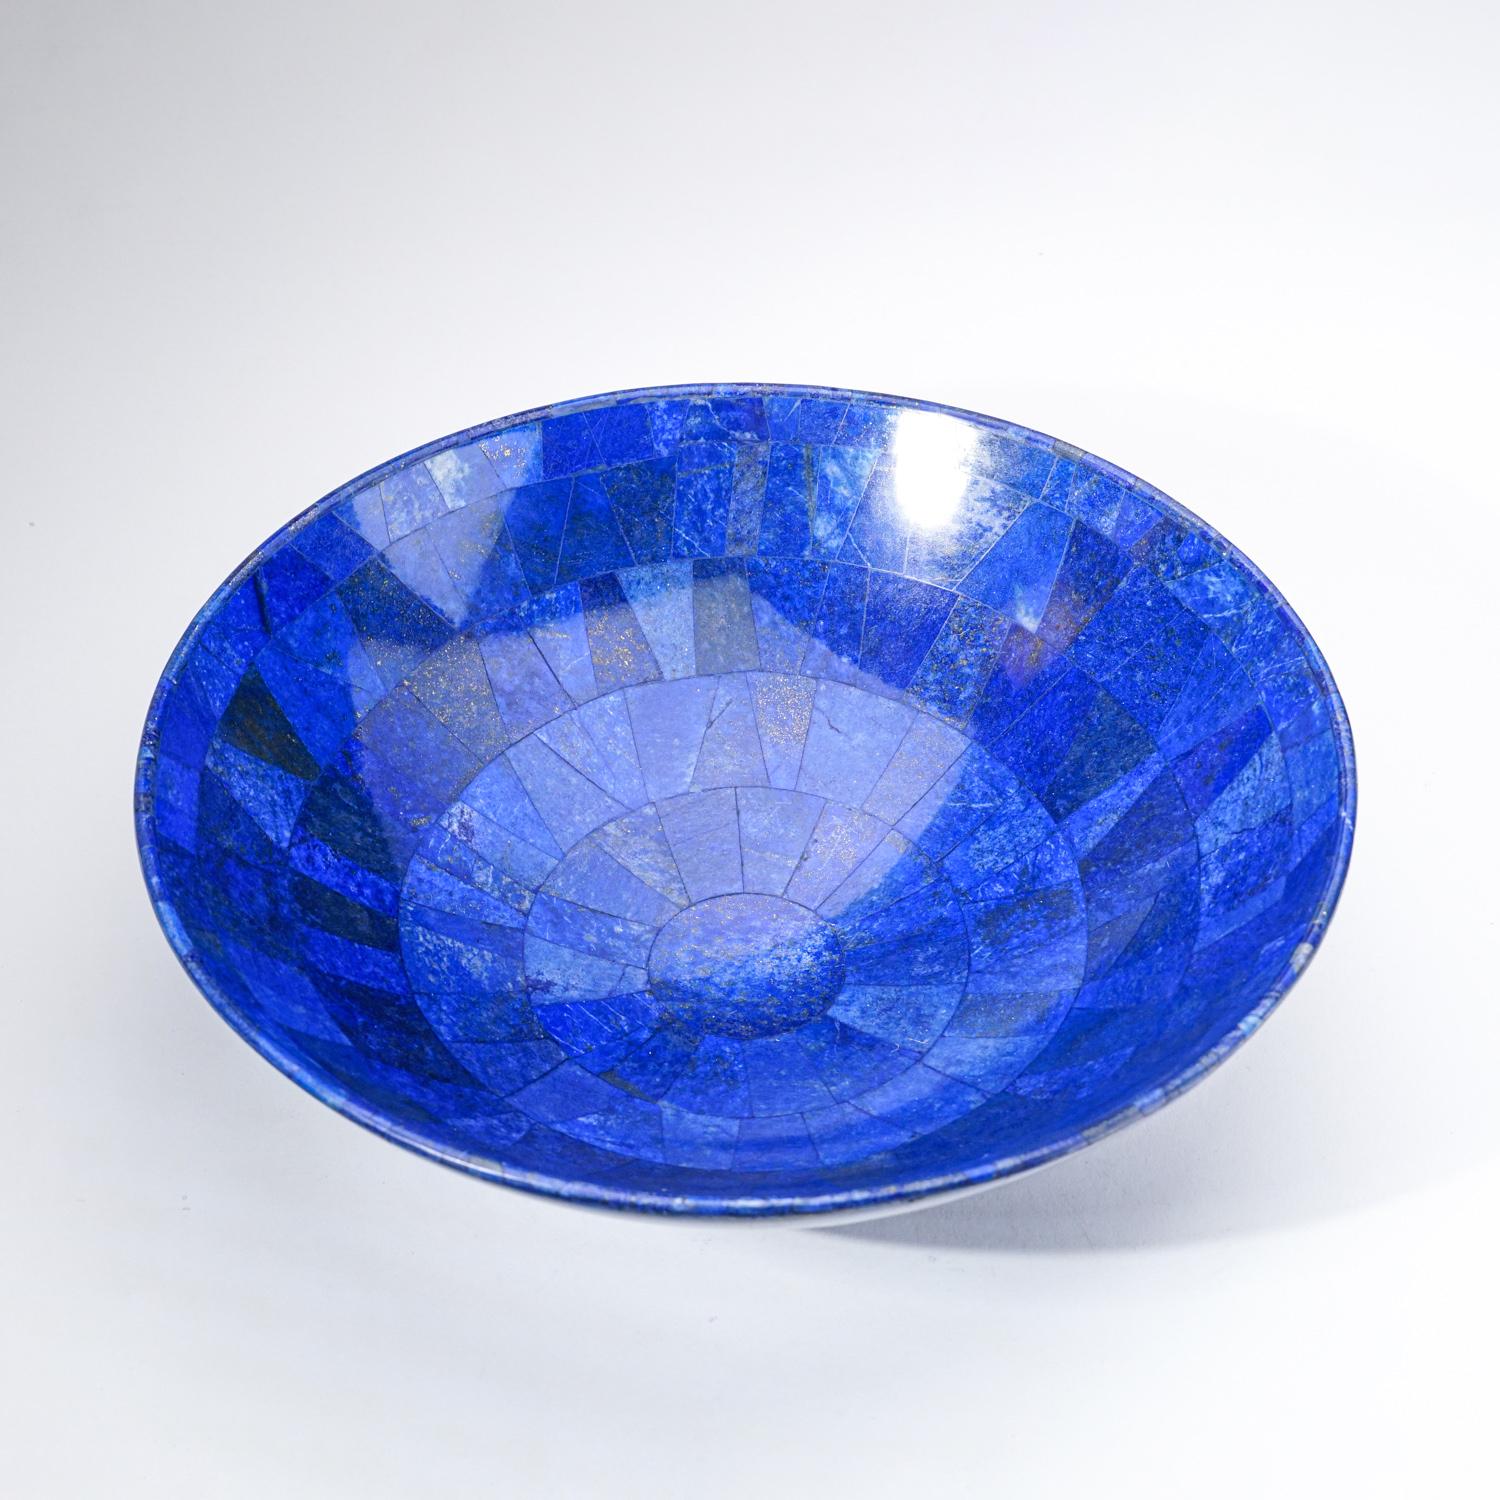 Handpolierte Lapislazuli-Schale in AAA-Qualität aus Afghanistan.  Dieses Exemplar hat eine satte, elektrisch-königsblaue Farbe, die mit funkelnden Pyrit-Mikrokristallen angereichert ist. Diese Schale aus Lapislazuli ist ein wunderbares Exemplar und